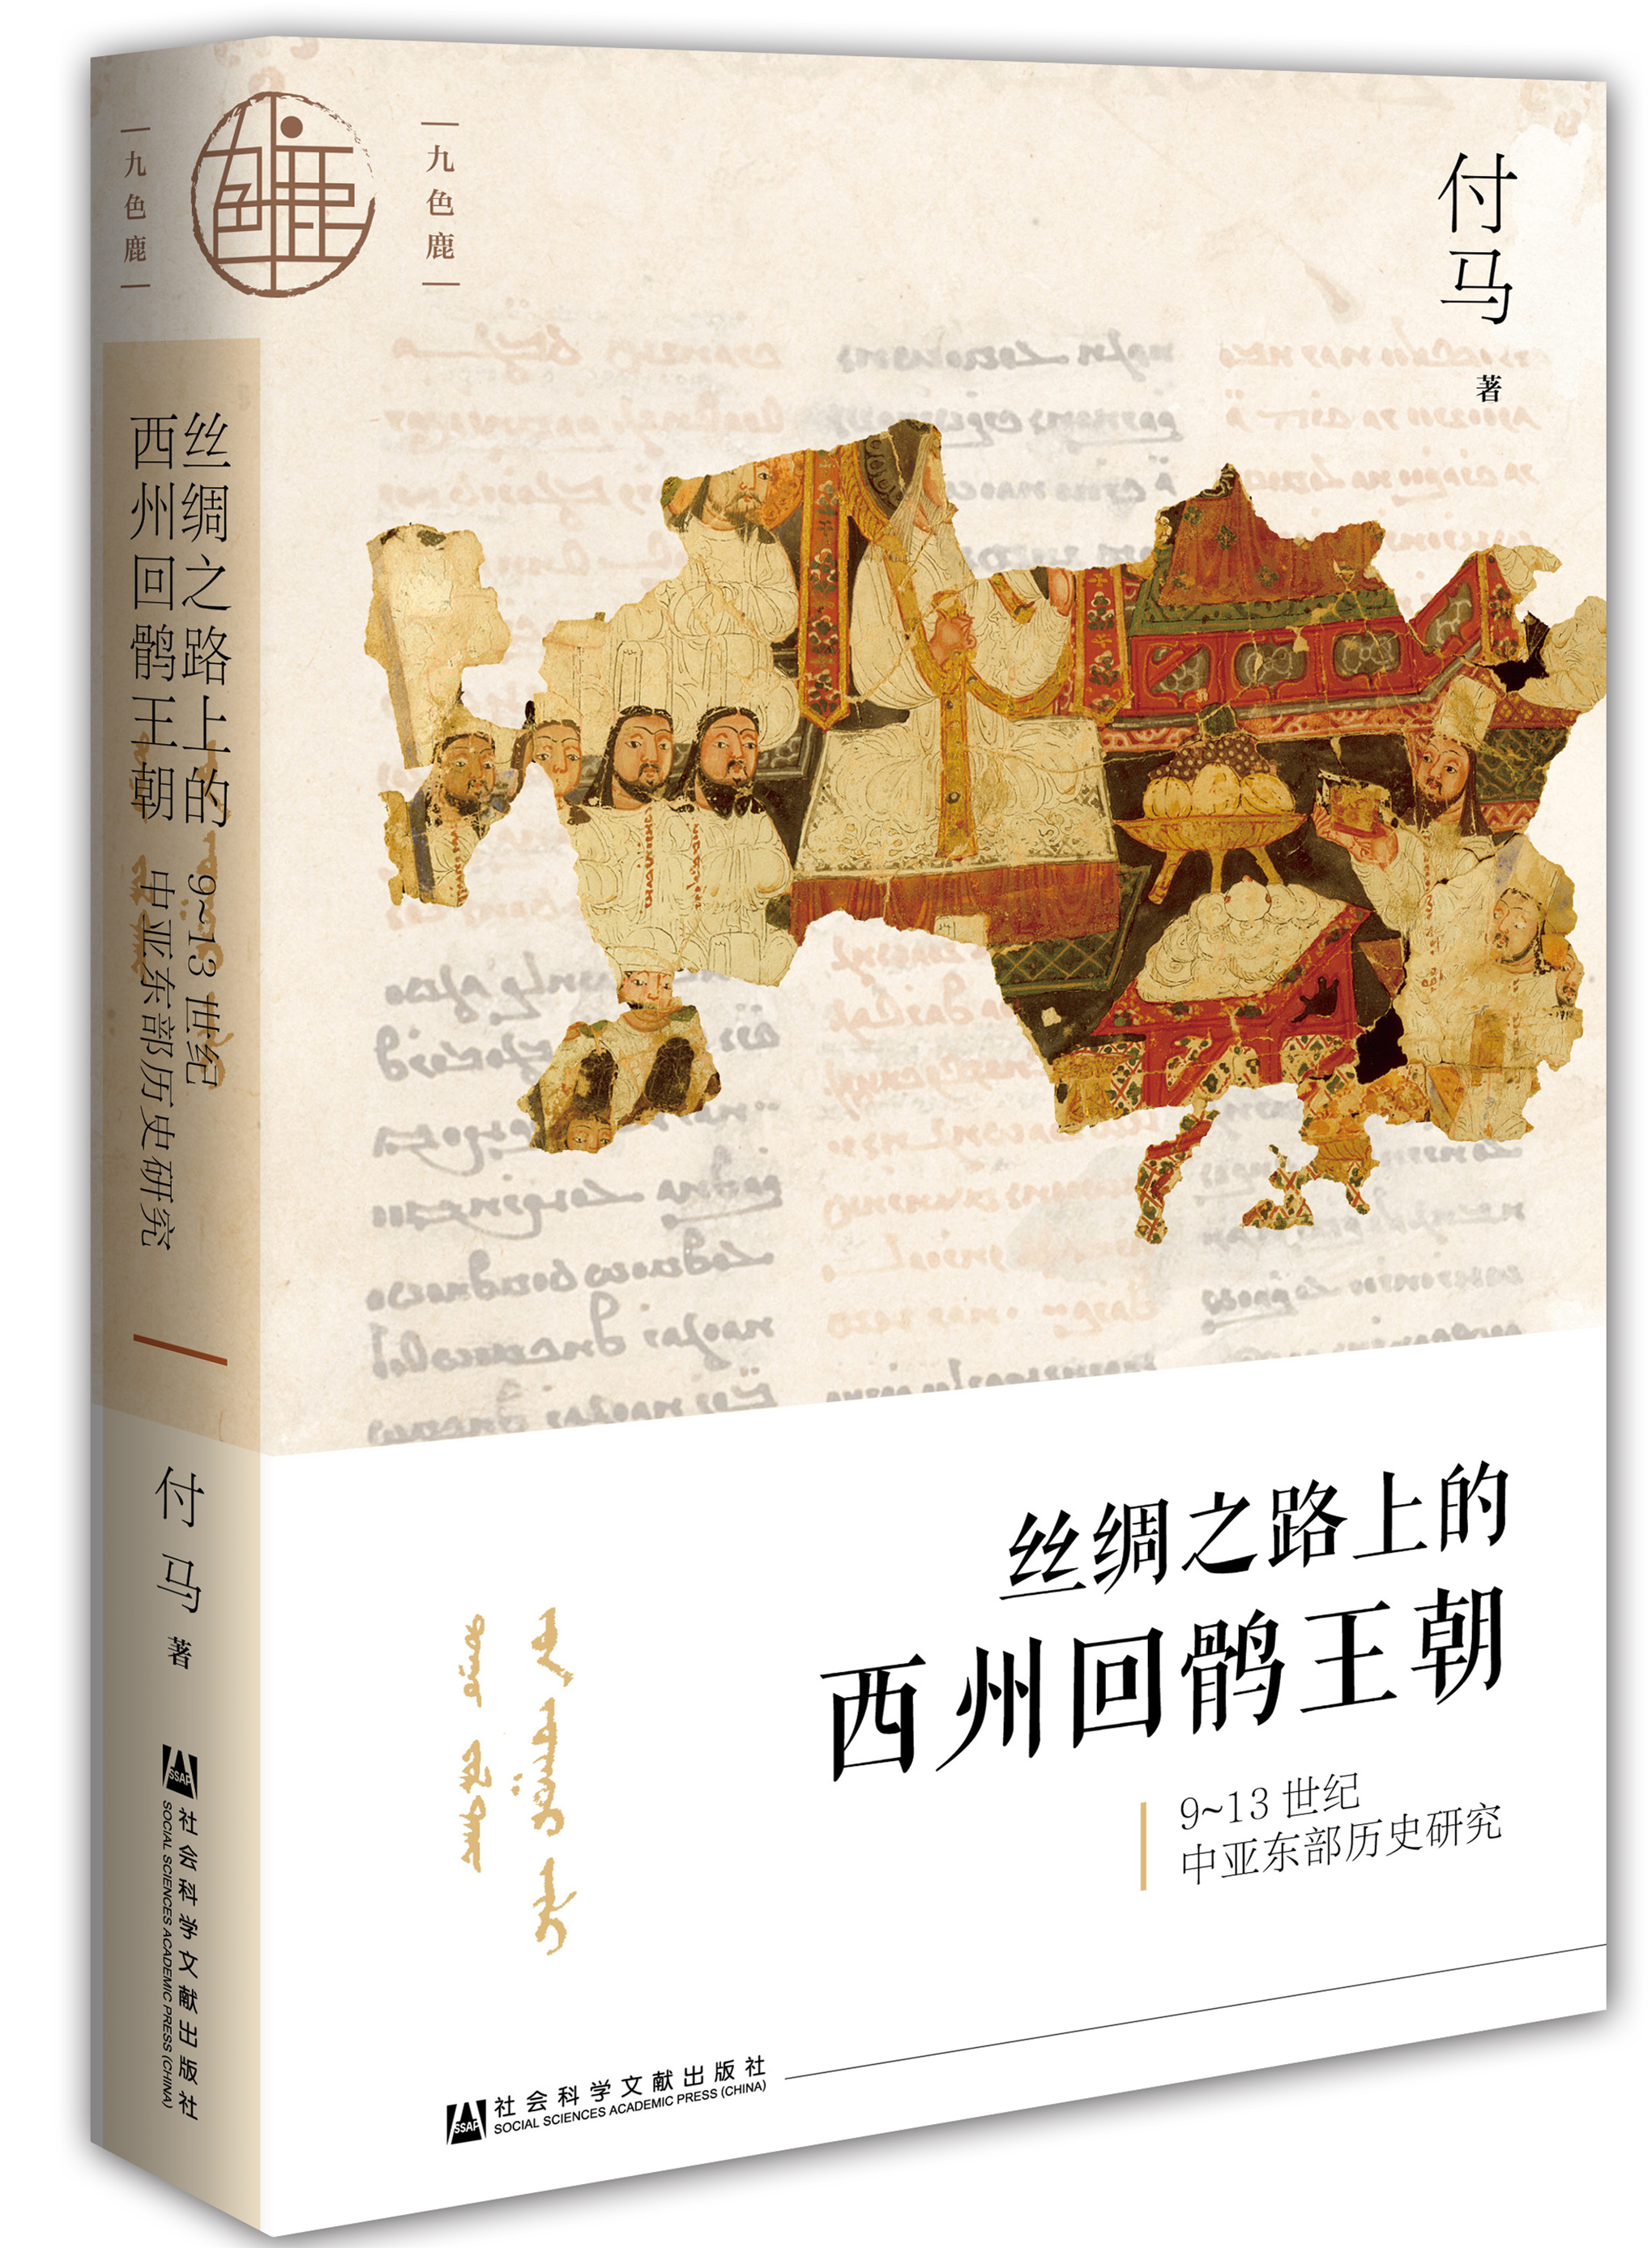 沙龙︱罗新、昝涛、付马：探寻丝绸之路上的西州回鹘文明